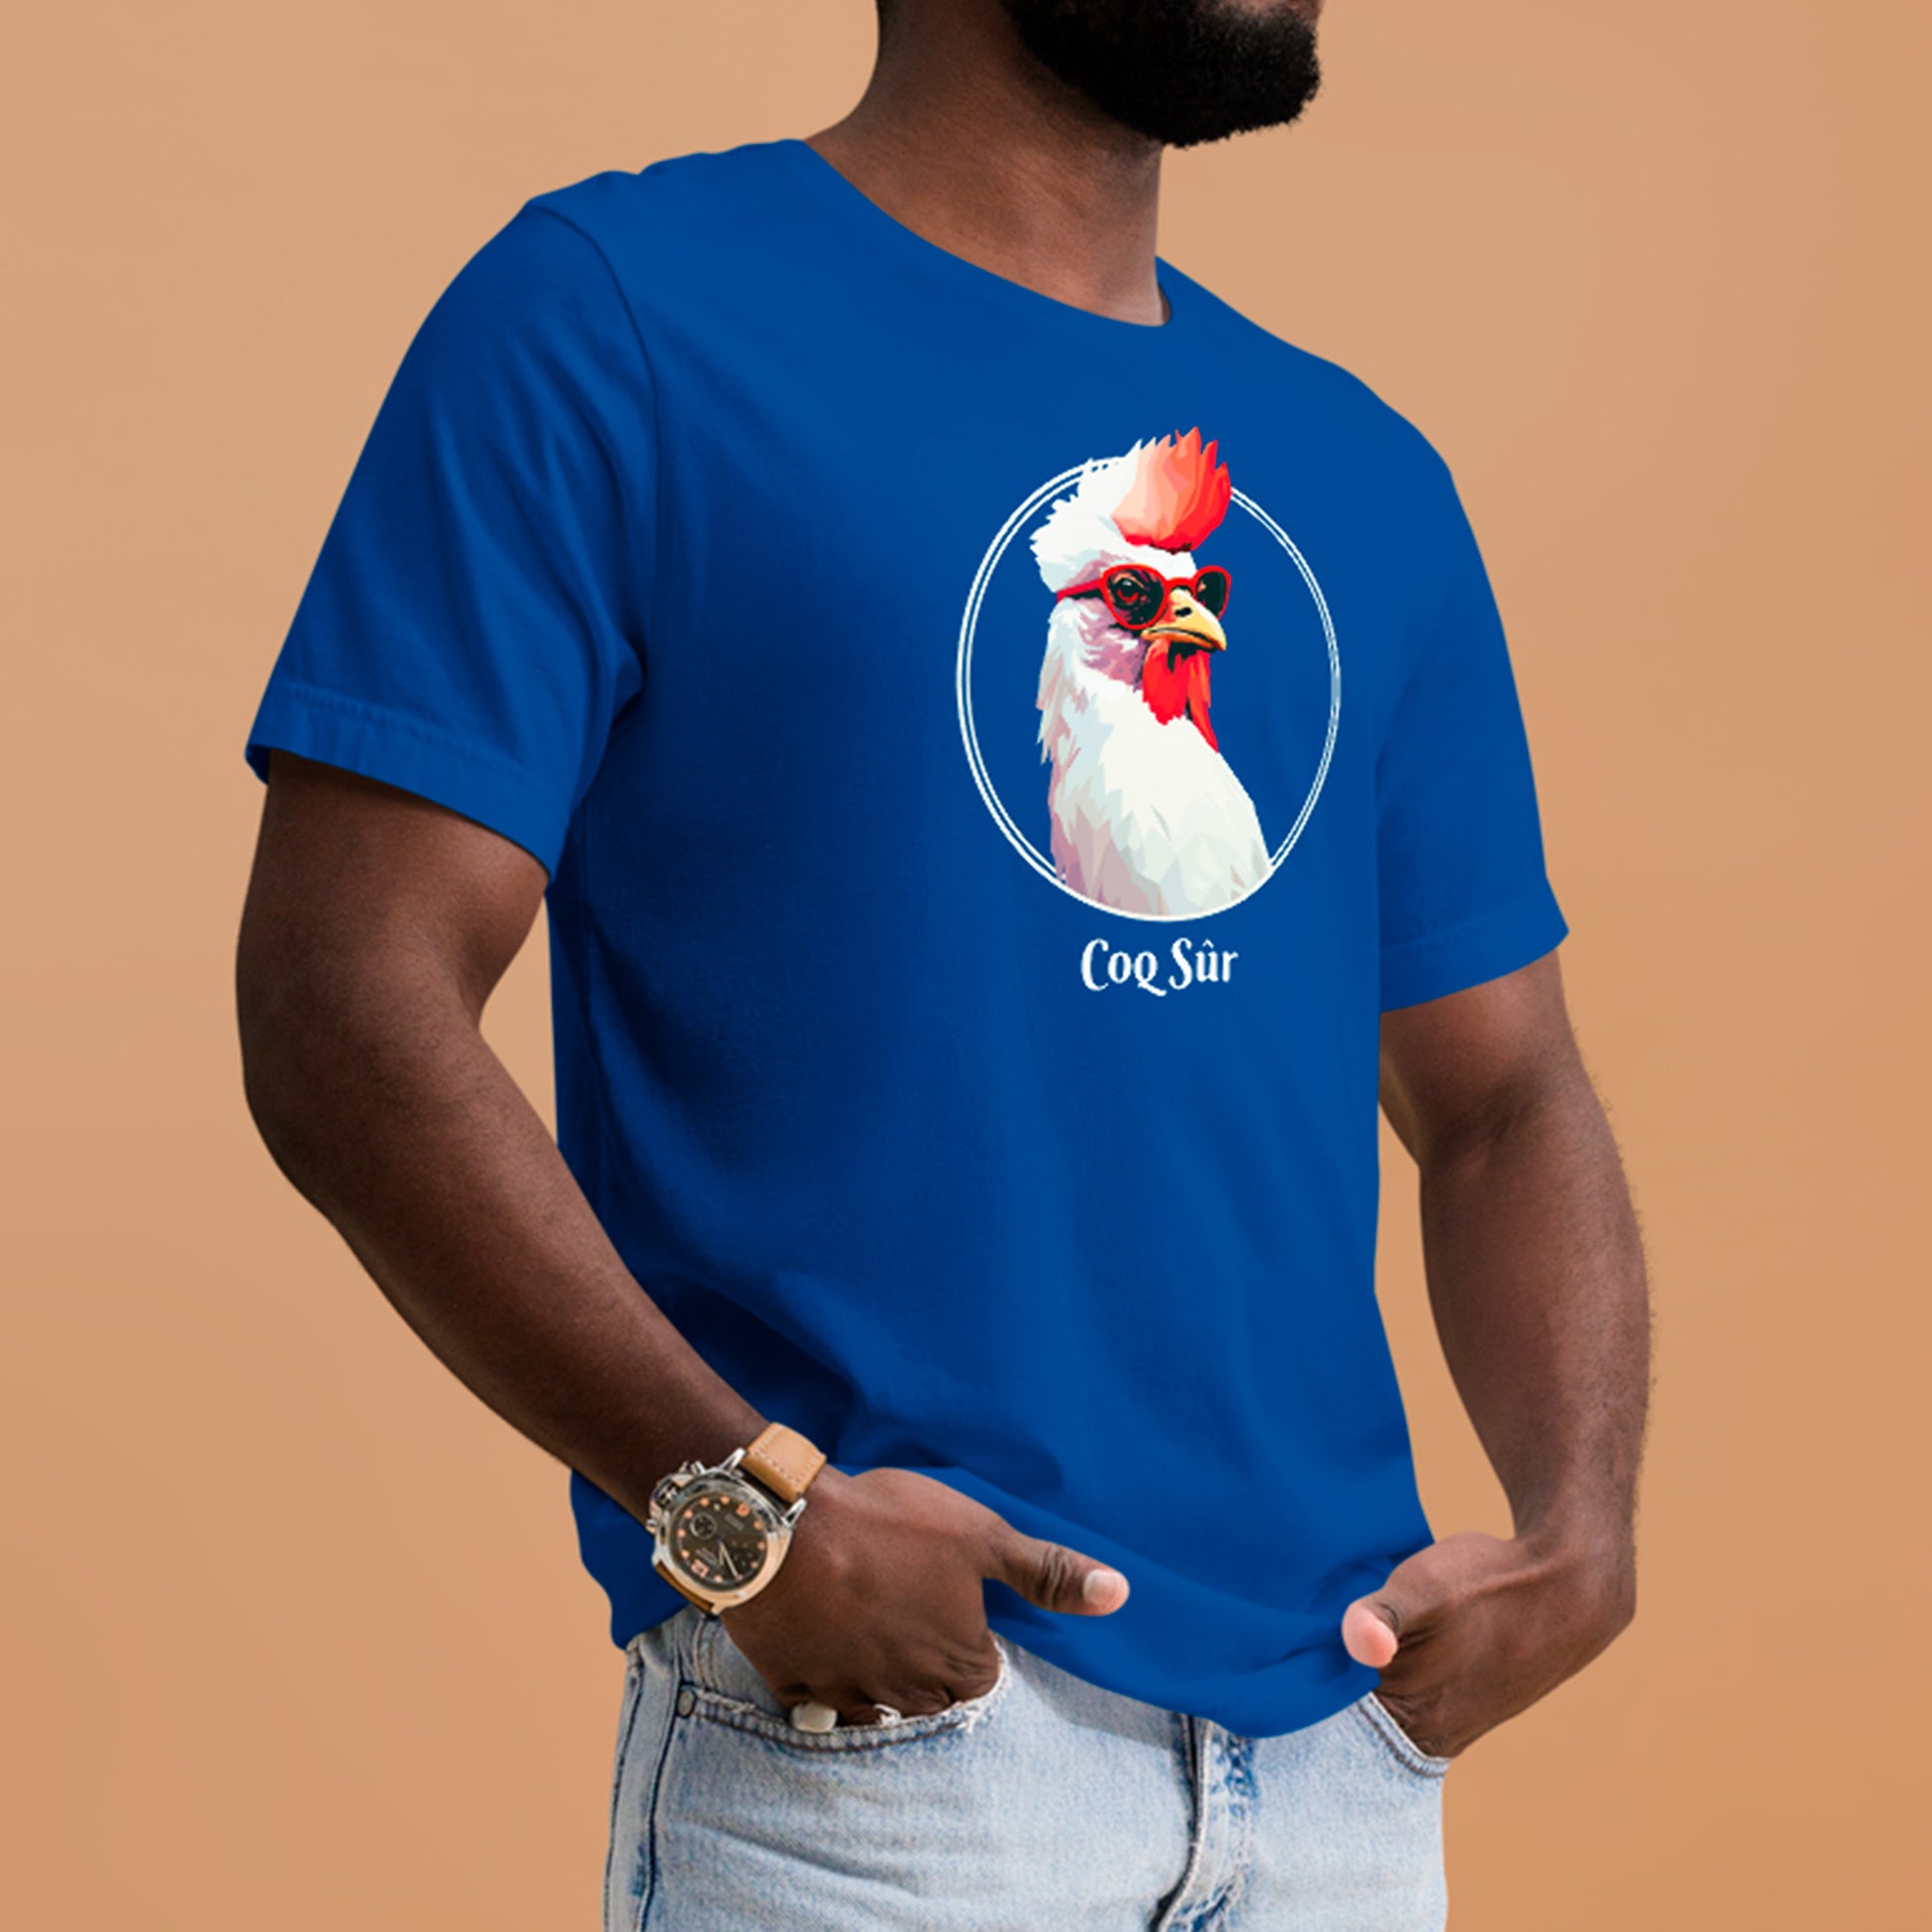 male model wearing Coq Sûr Unisex t-shirt